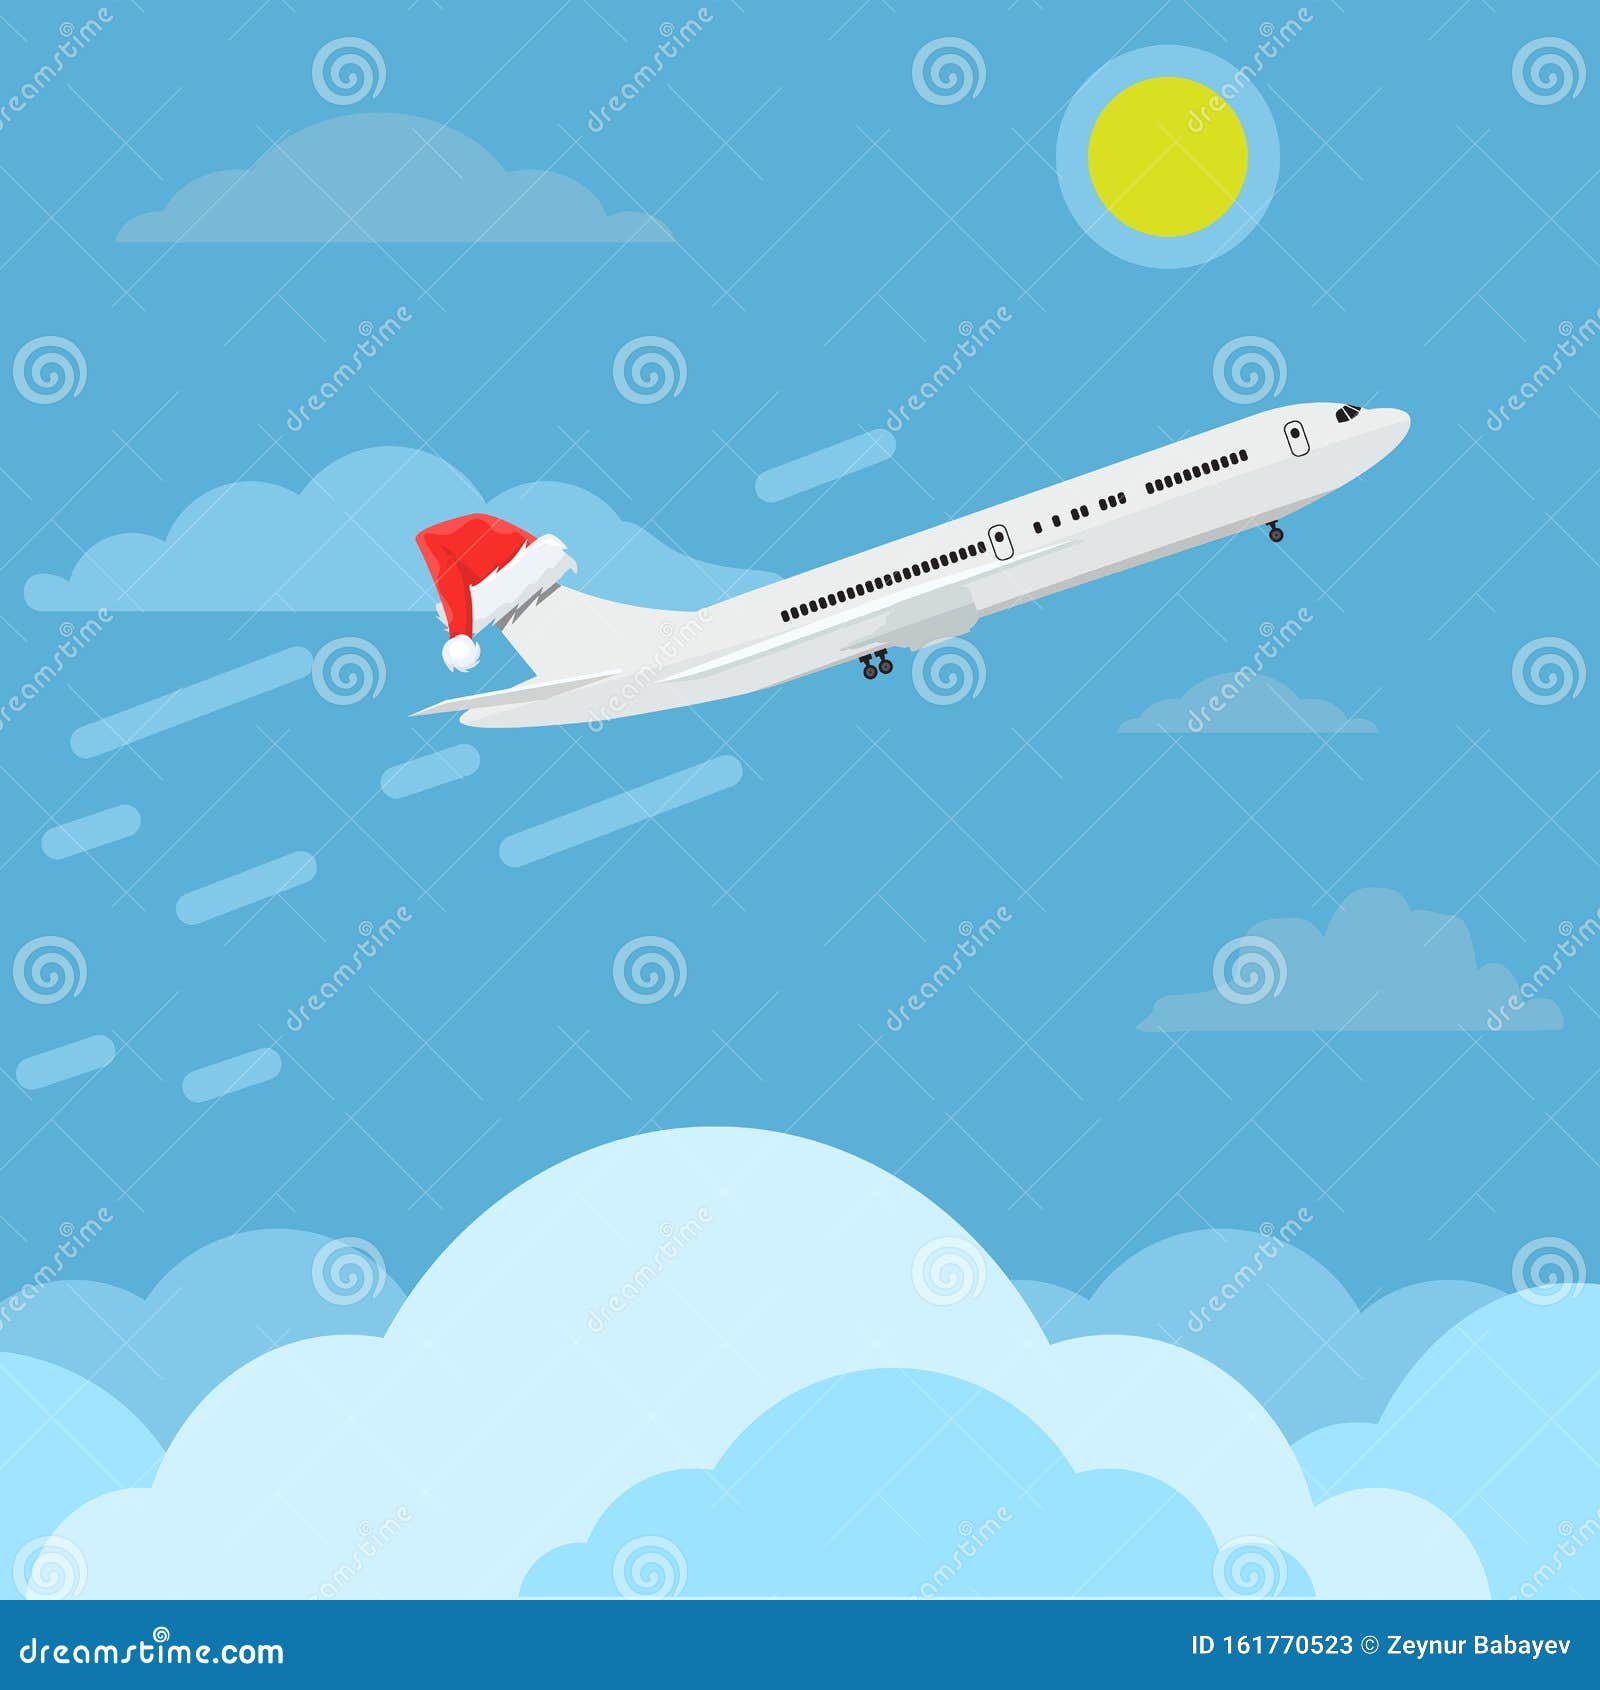 Higher Plane Stock Illustrations – 20 Higher Plane Stock ...